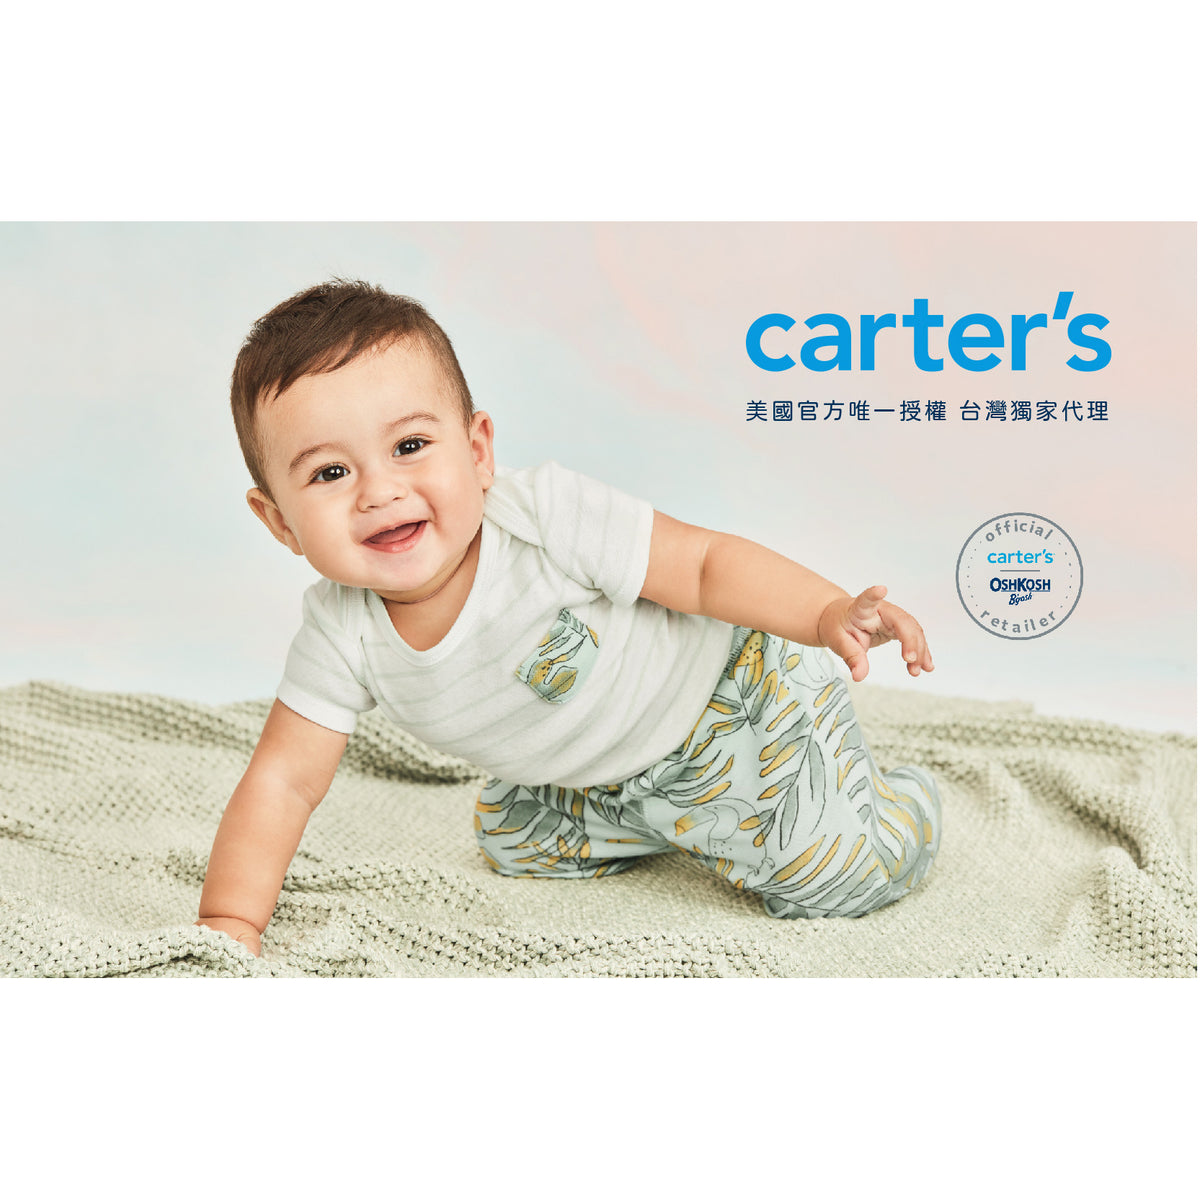 Carter's 變色龍探險連身褲(6M-24M)